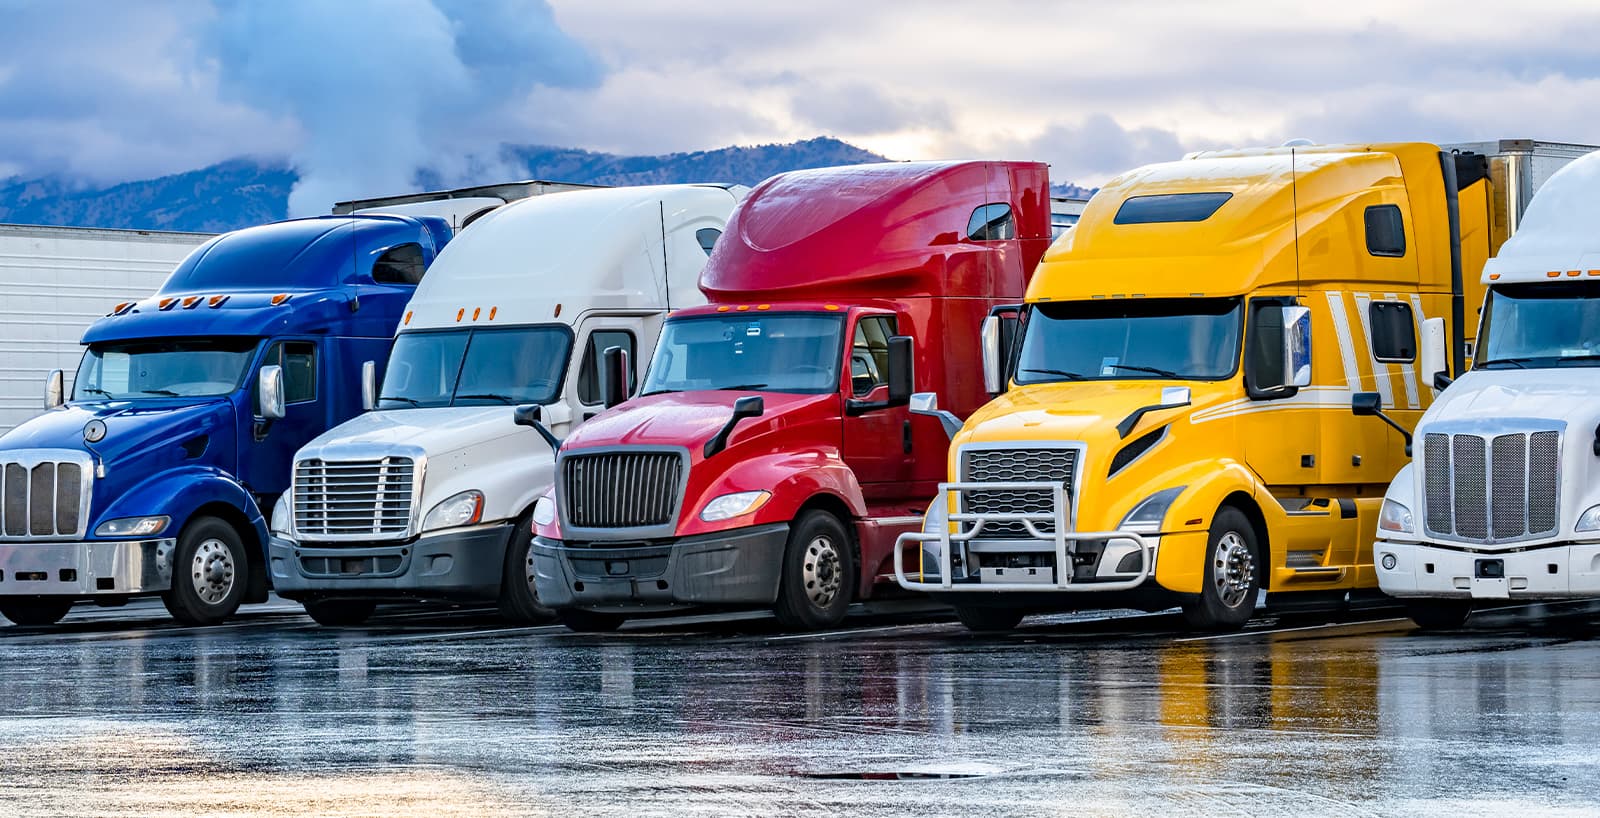 TruckSmart Mobile Centers of Travel America | App